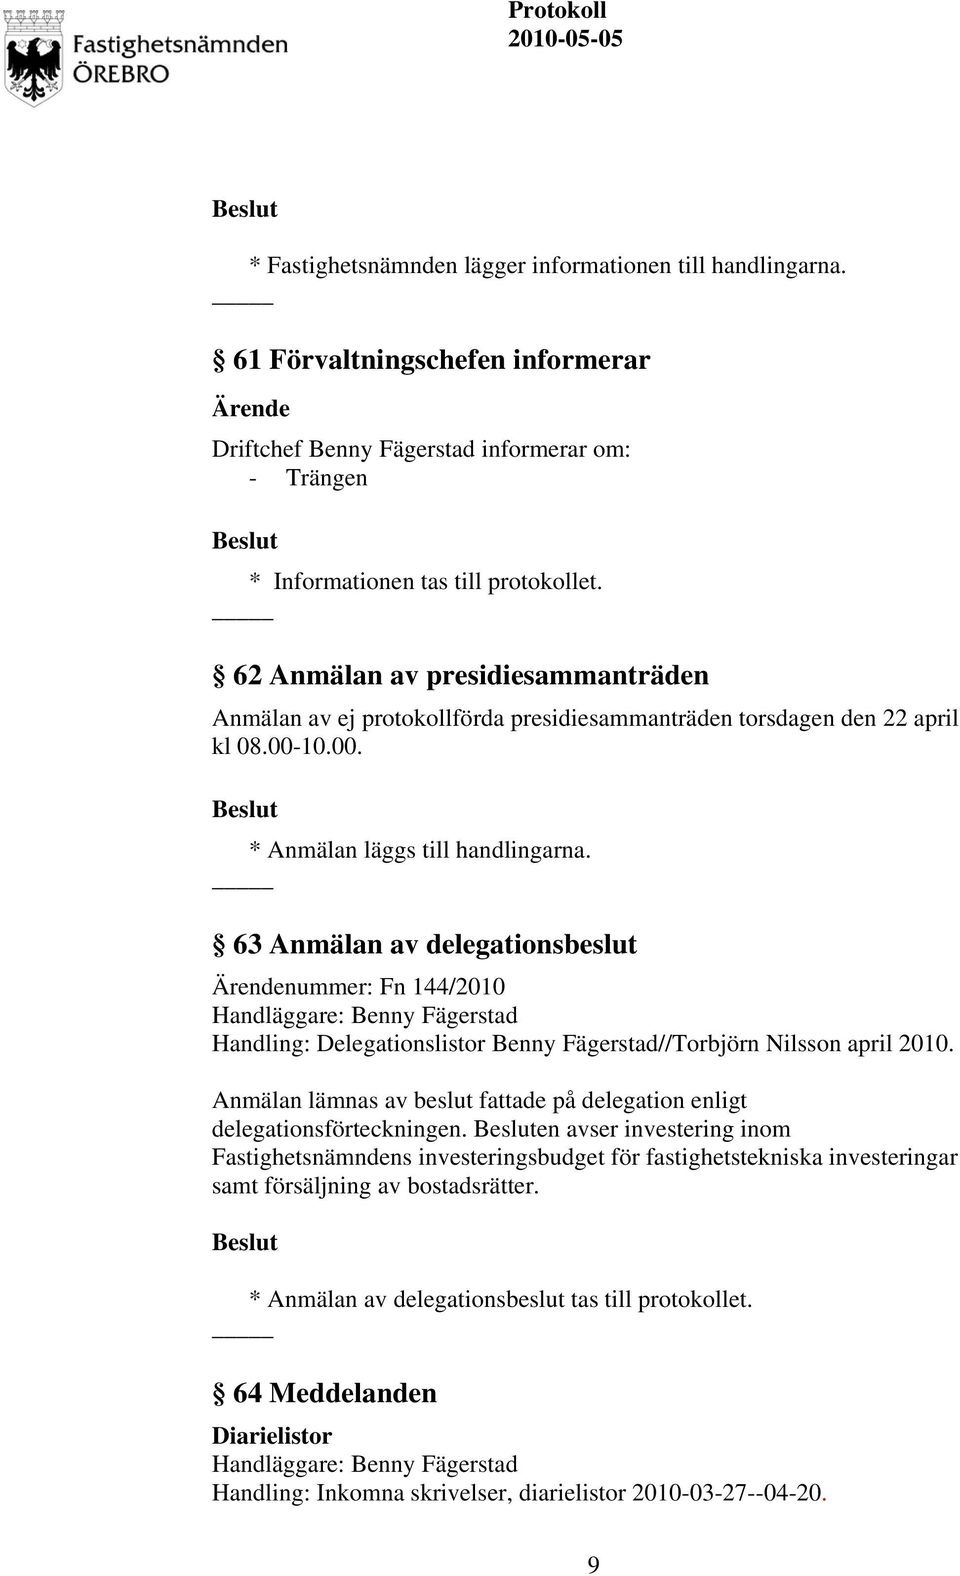 63 Anmälan av delegationsbeslut nummer: Fn 144/2010 Handling: Delegationslistor Benny Fägerstad//Torbjörn Nilsson april 2010.